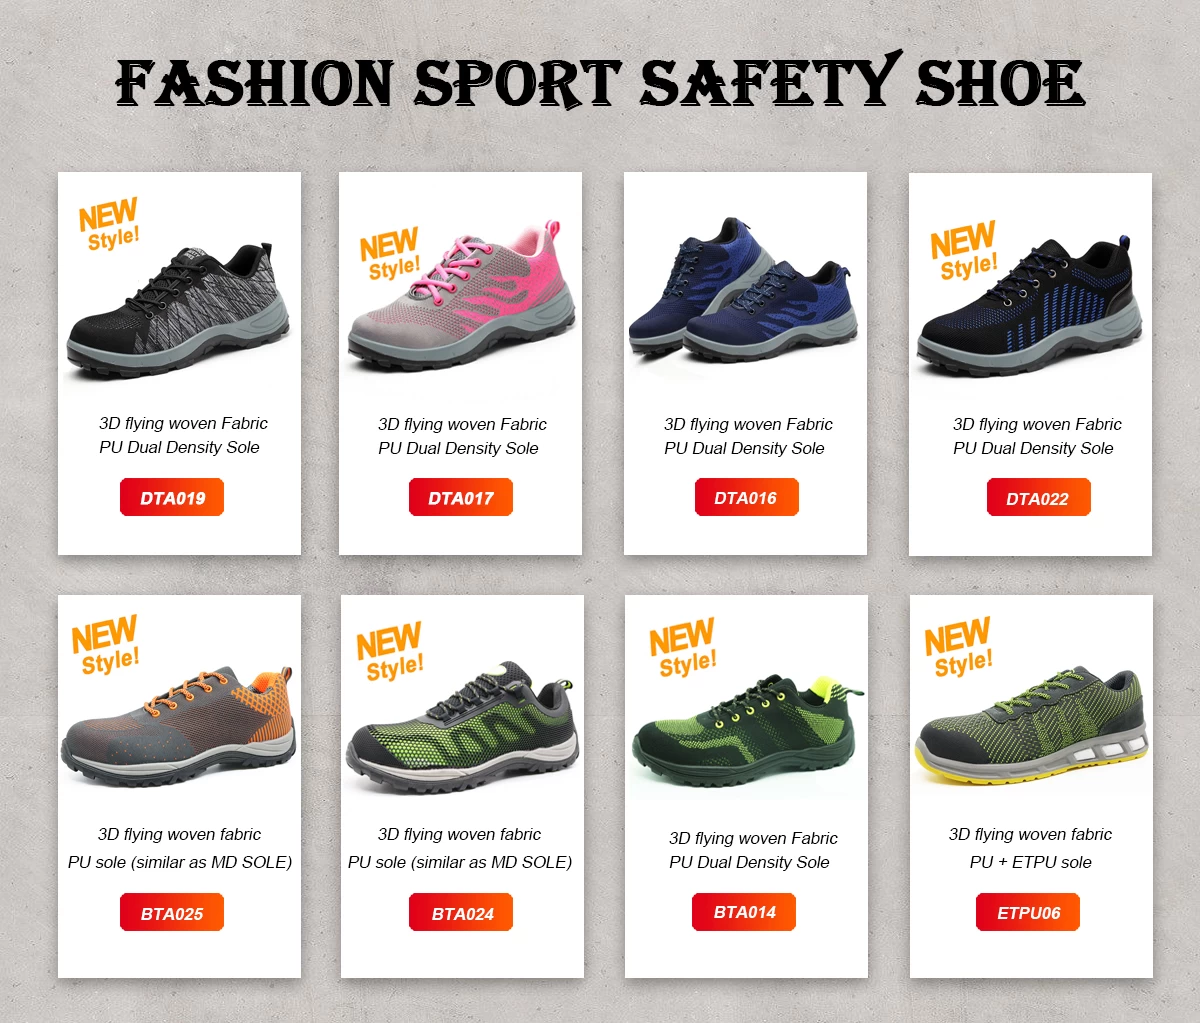 中国 时尚运动安全鞋 制造商